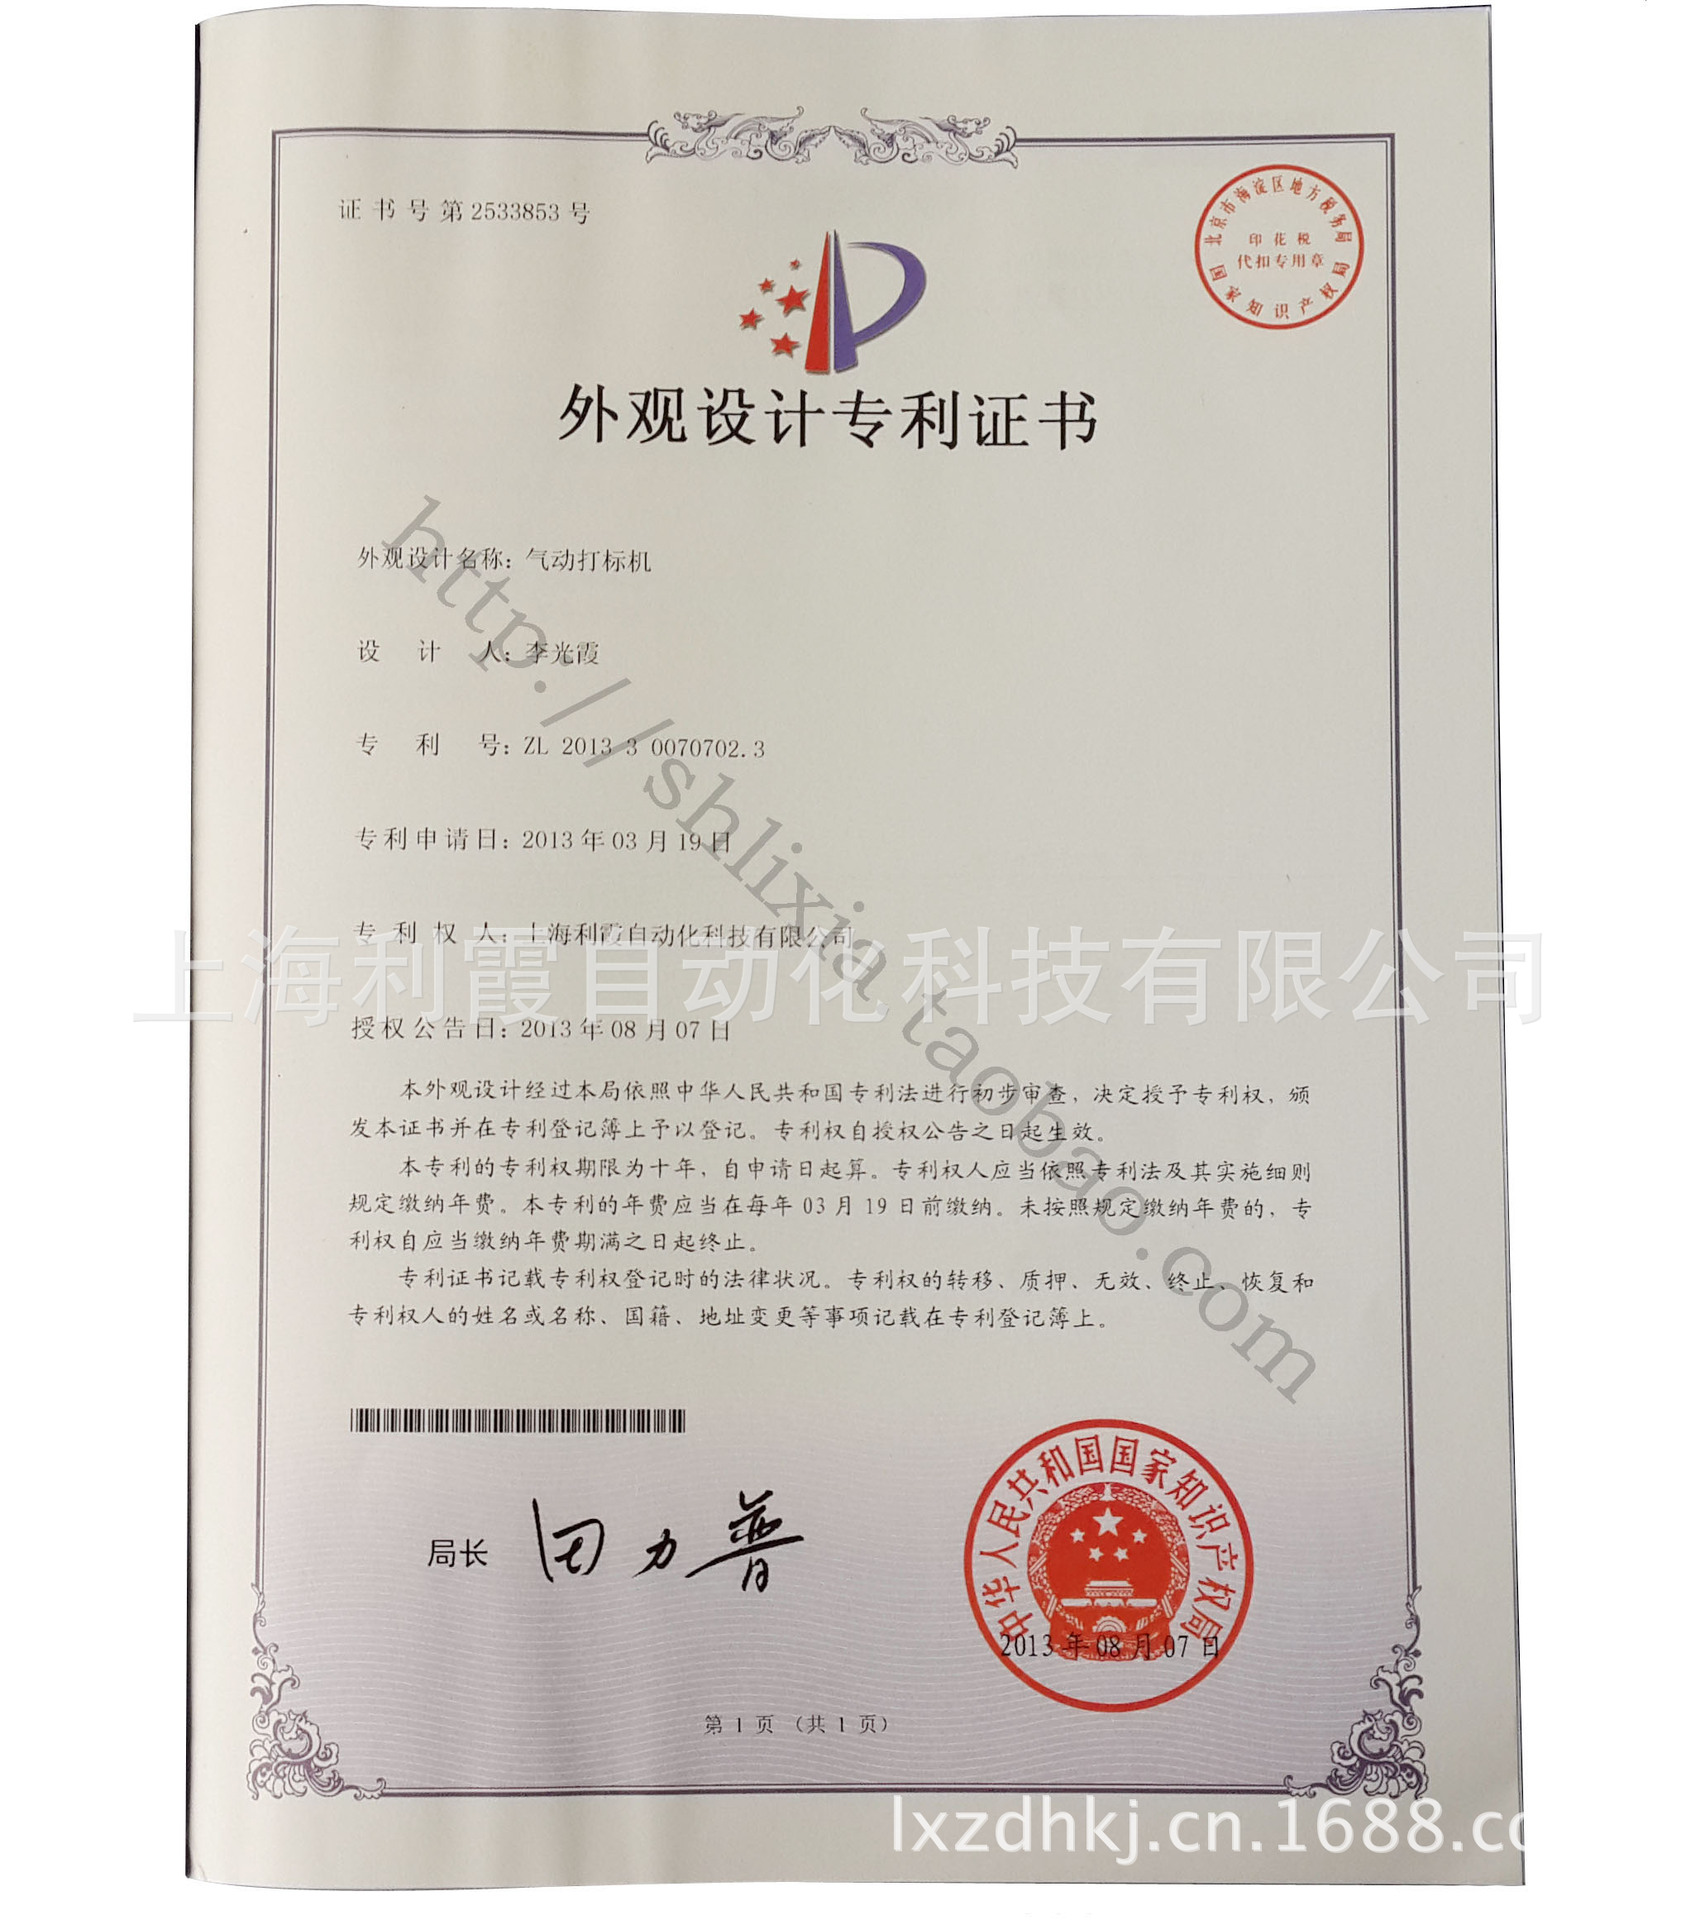 上海利霞自動化科技有限公司產品專利證書